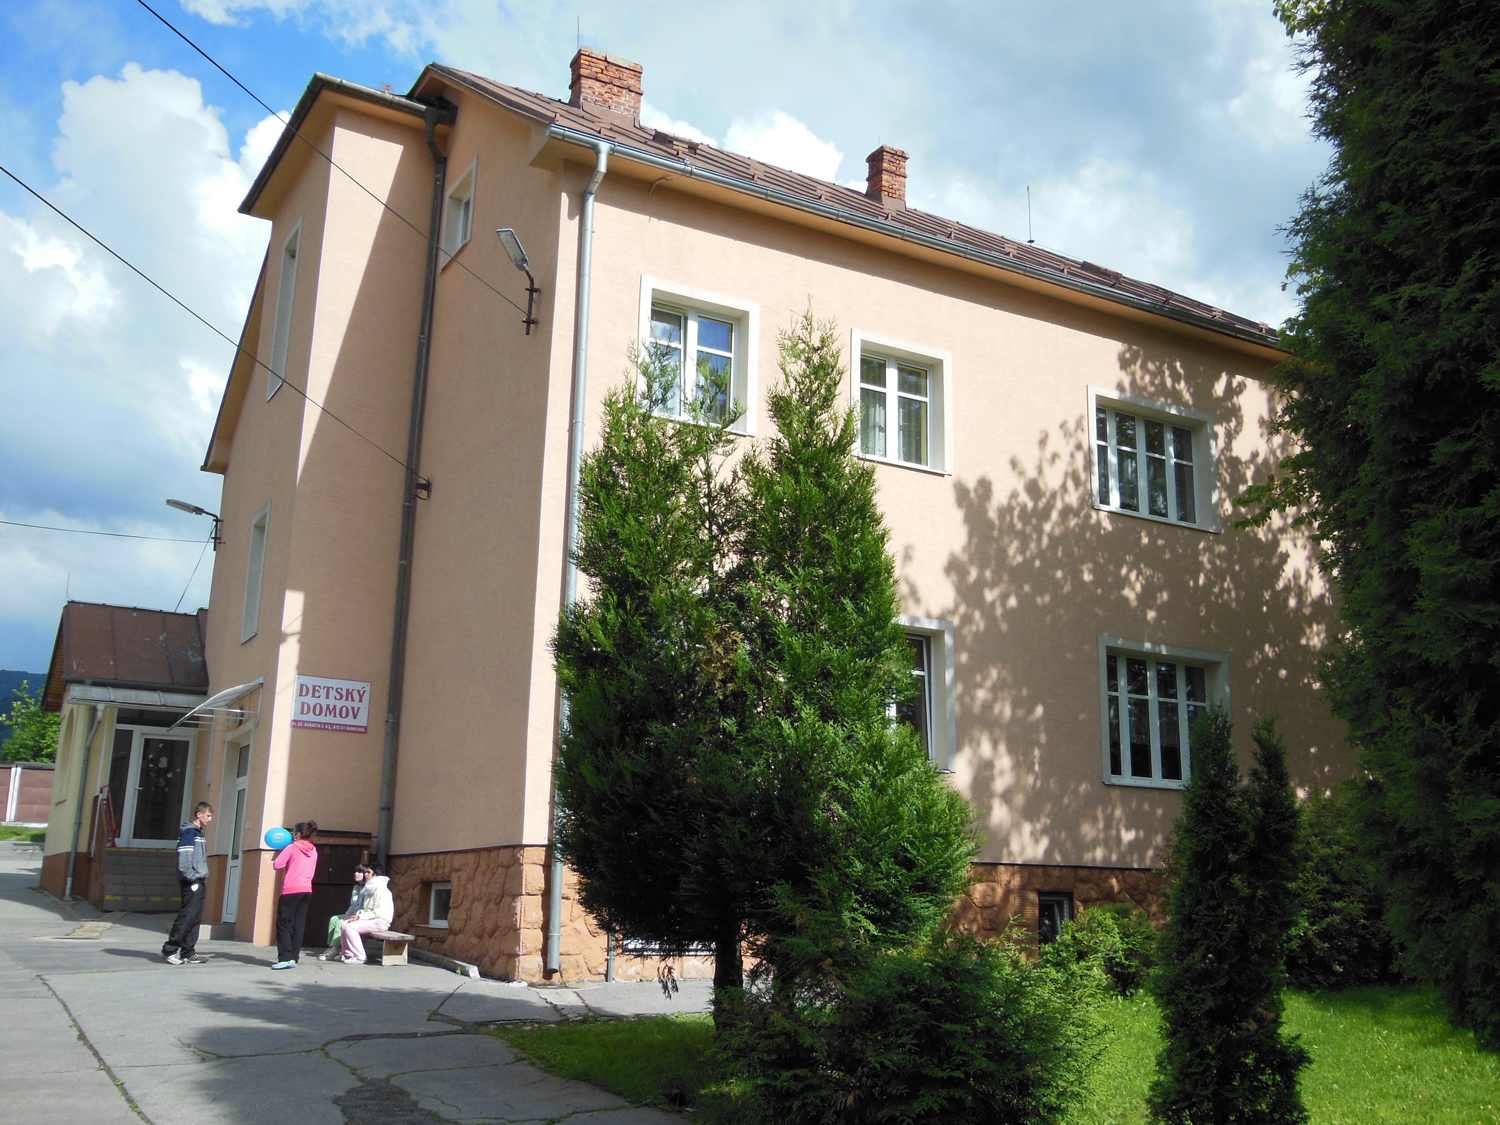 Praxisklinik Baden-Baden